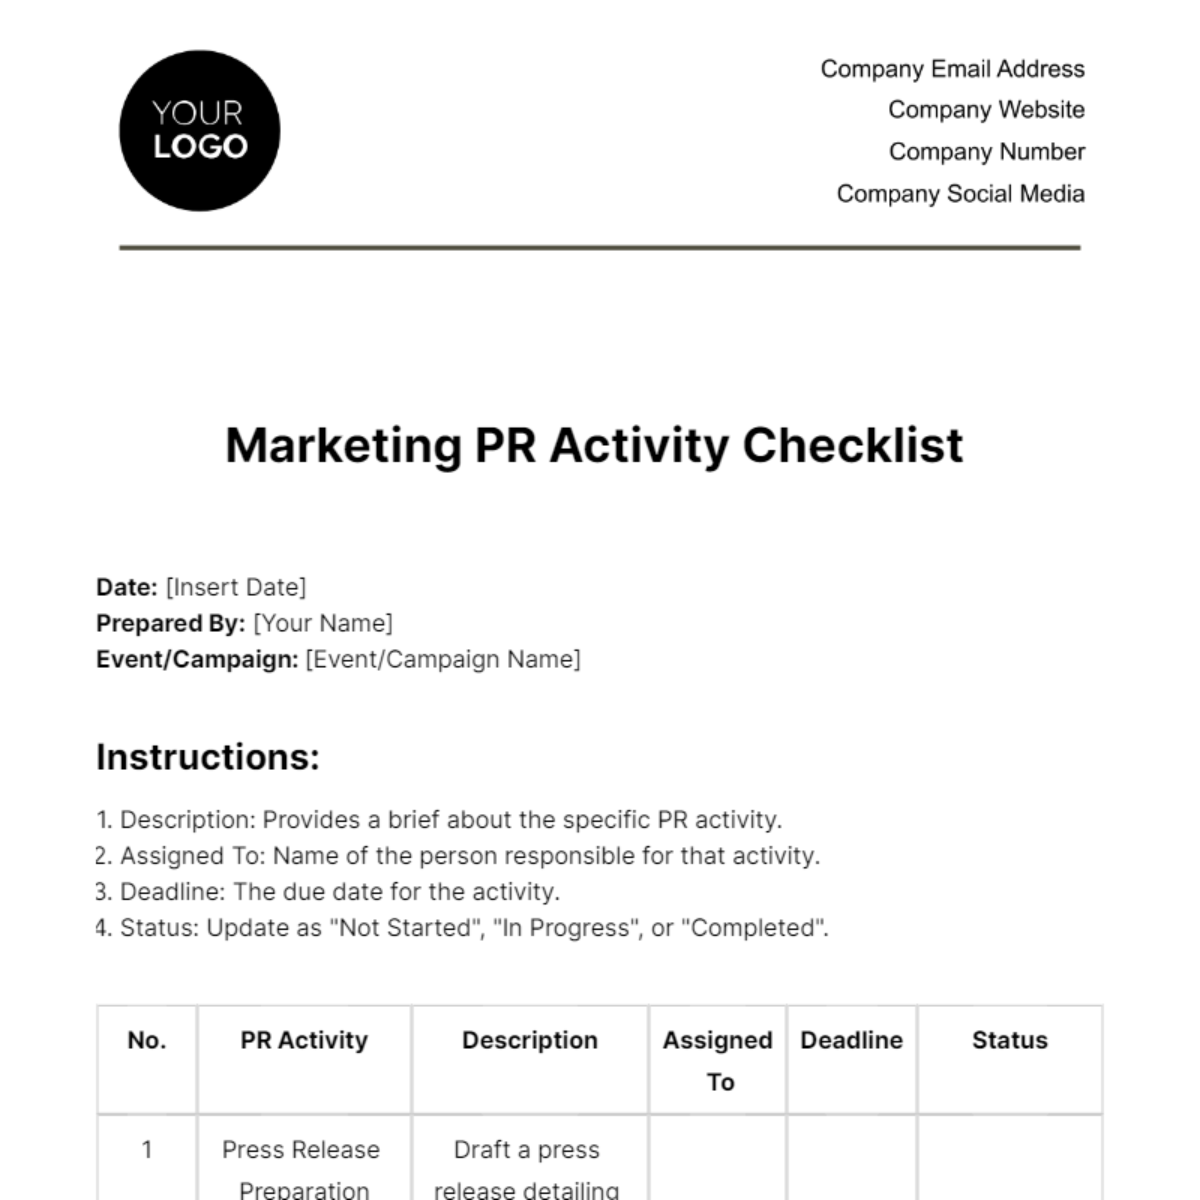 Marketing PR Activity Checklist Template